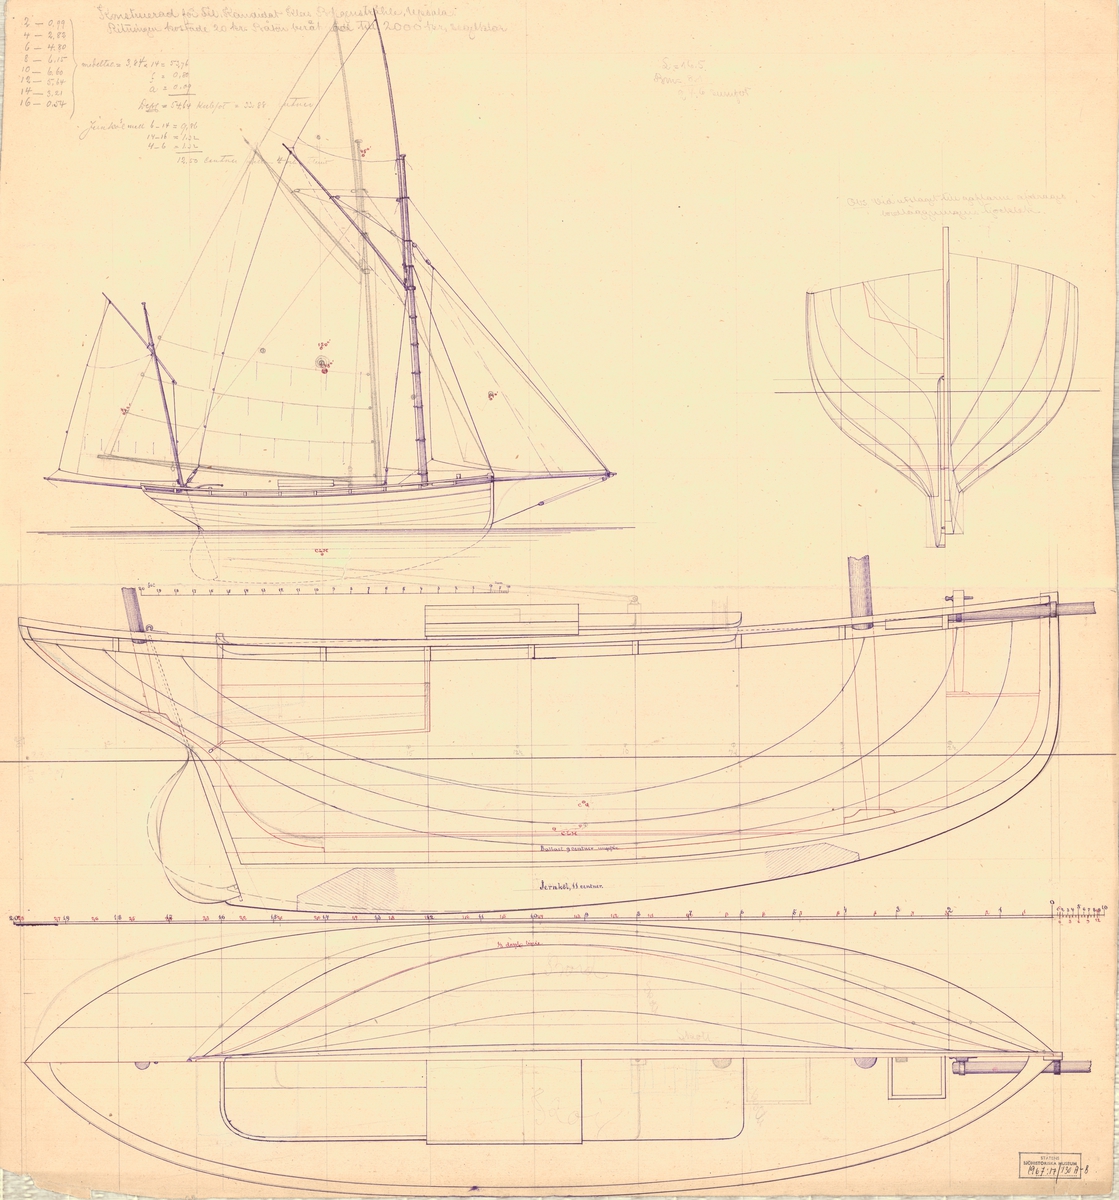 Tvåmastad segelbåt ritad av Carl Smith för fil. kandidat Klas Borgenstråhle.
Spantruta, rigg, profil och linjeritning